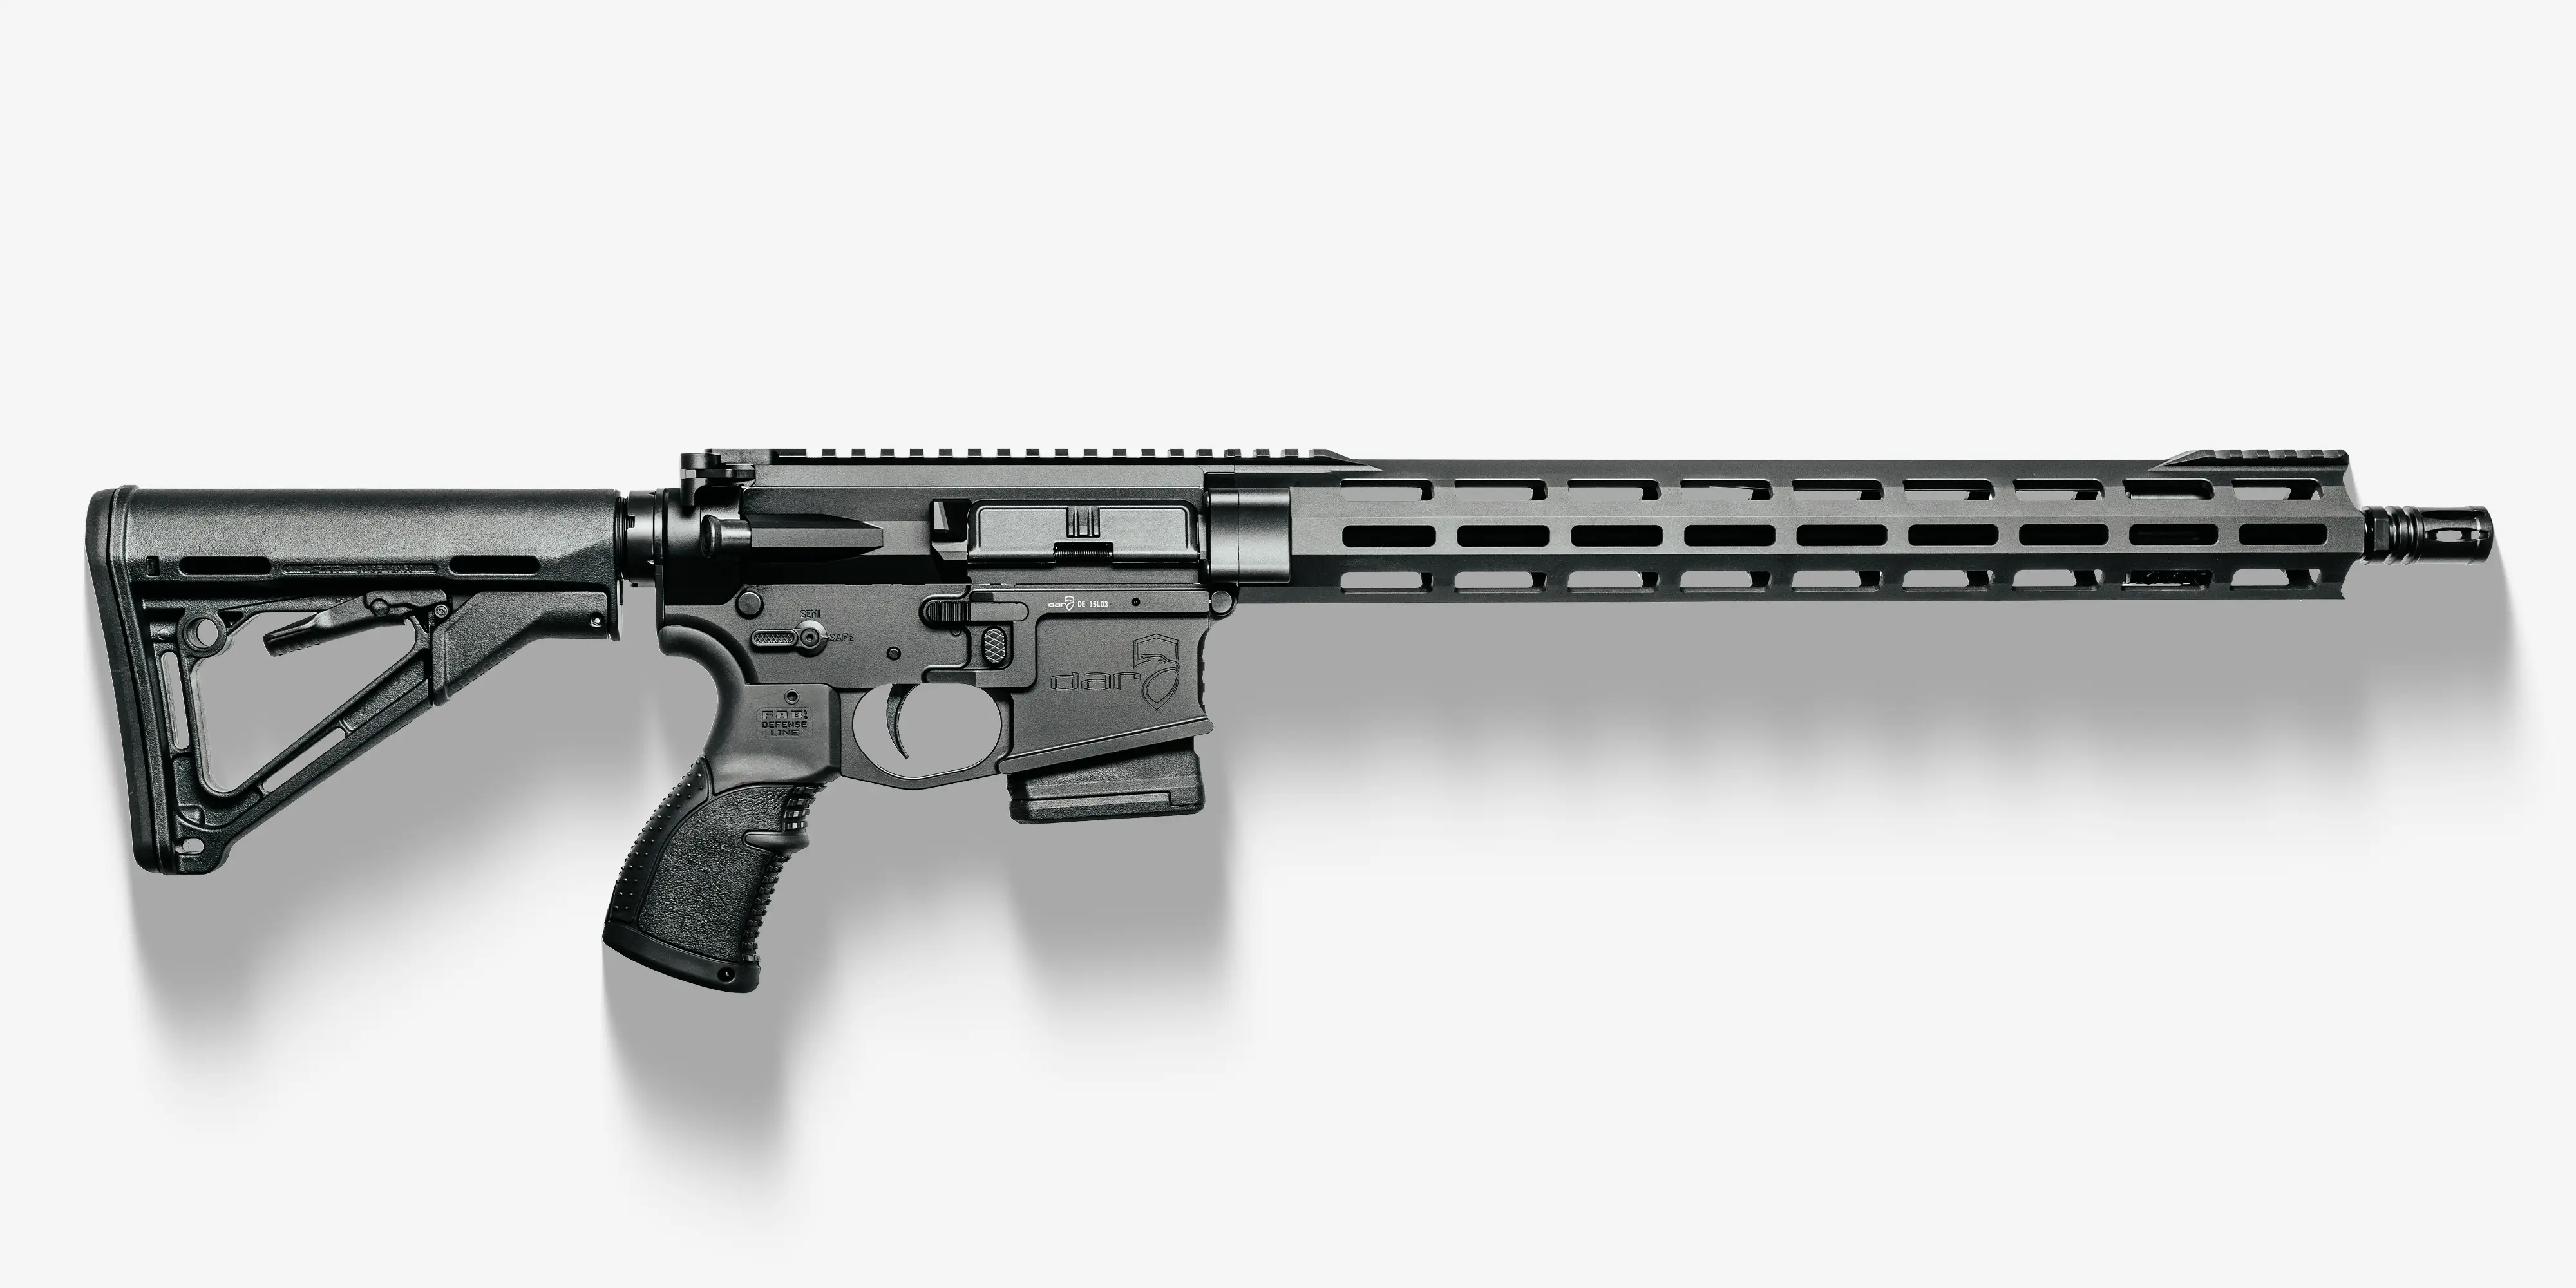 DAR-15 BSR (Basic Sports Rifle)